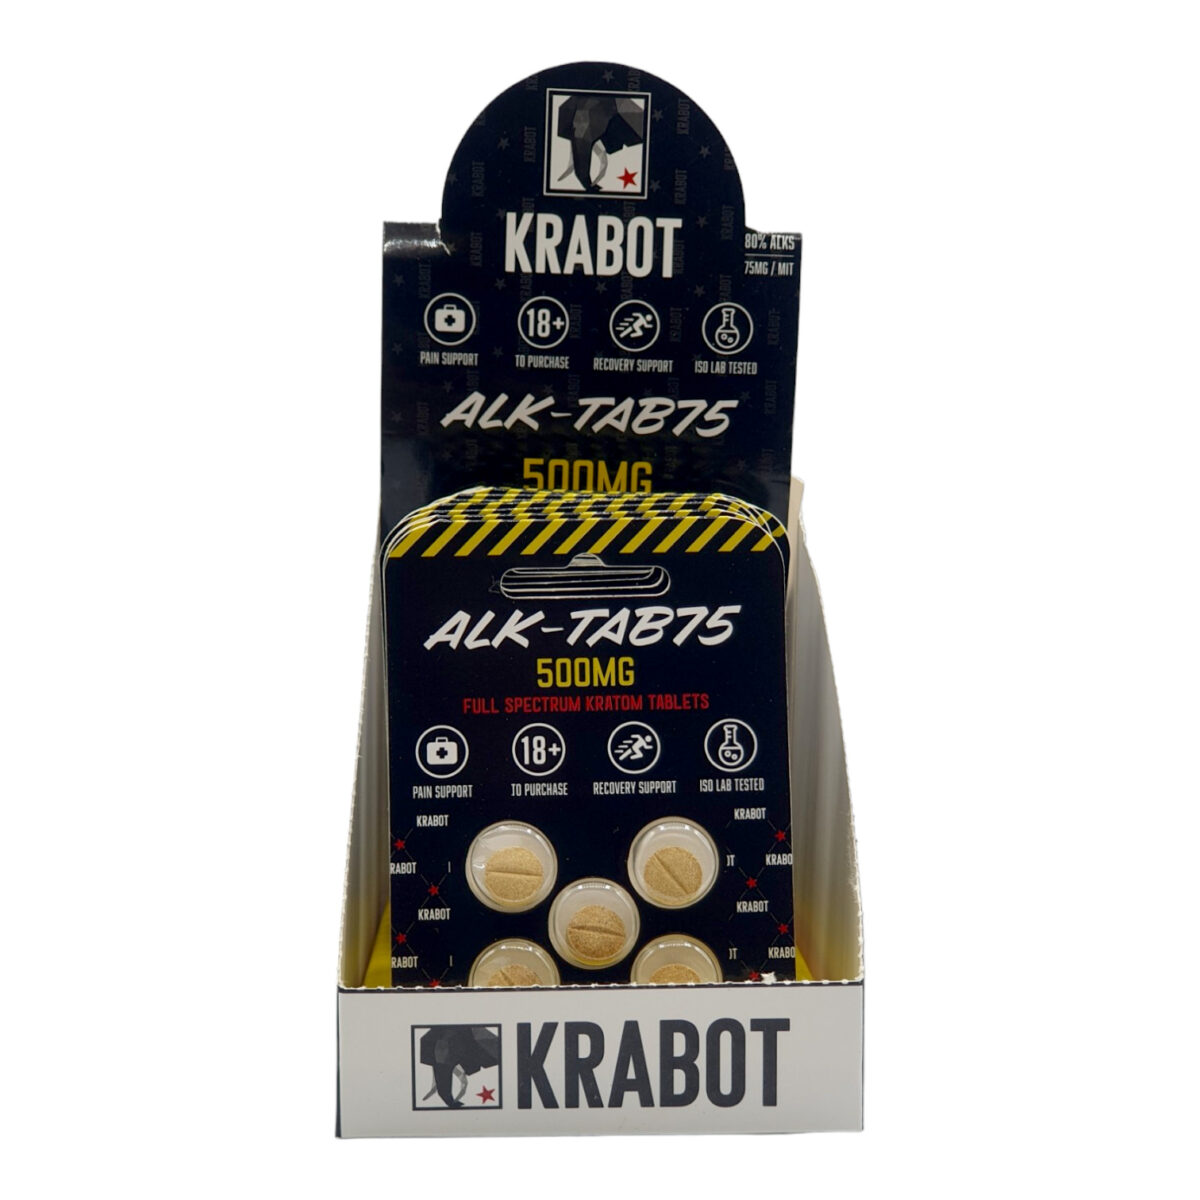 Krabot Alk-Tab75 500MG Kratom Tab – 5ct